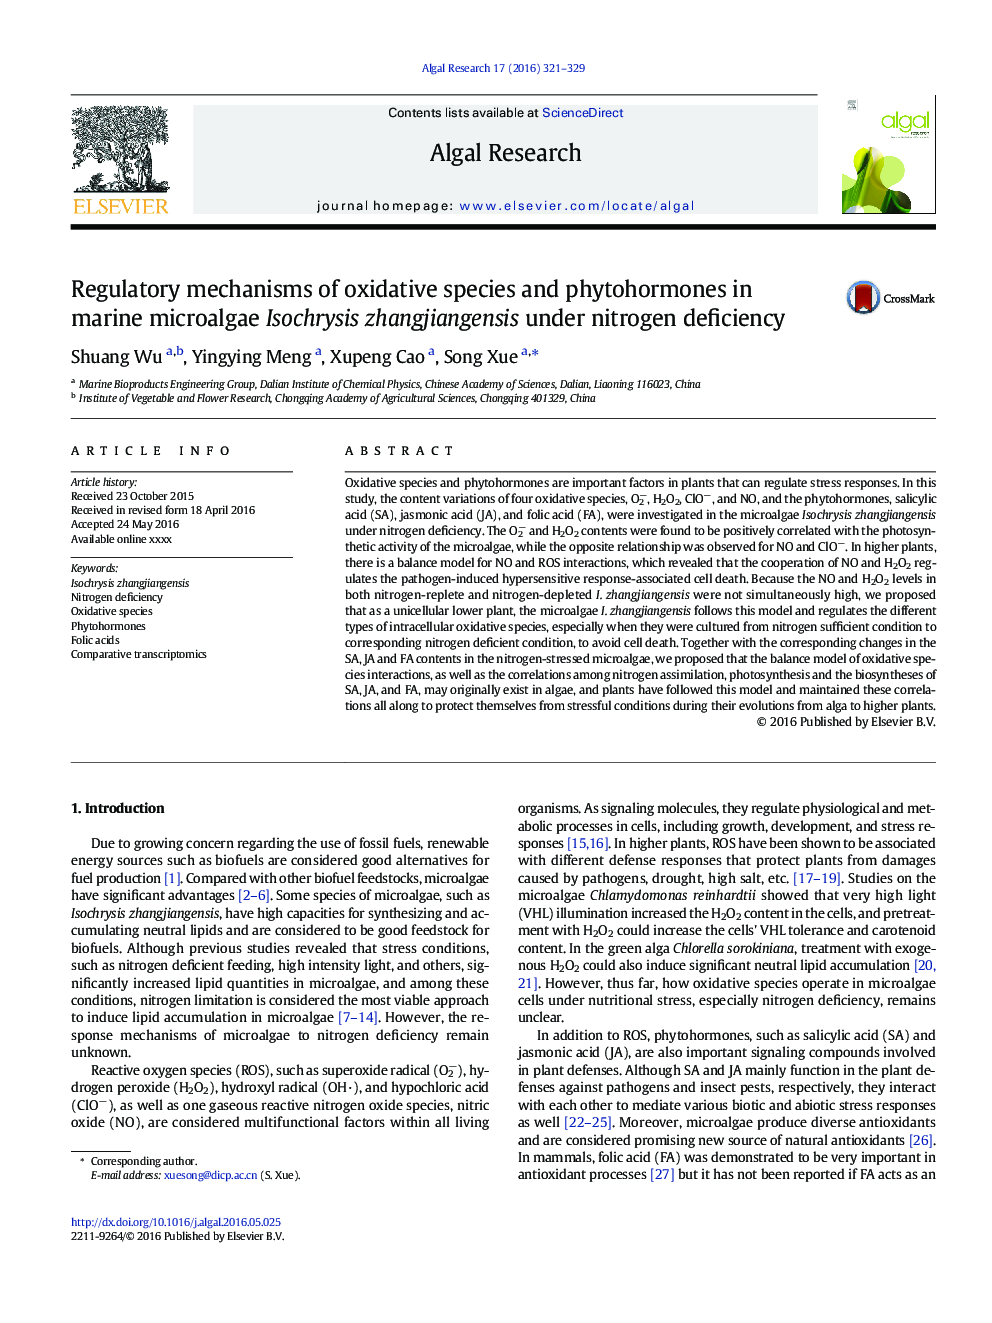 Regulatory mechanisms of oxidative species and phytohormones in marine microalgae Isochrysis zhangjiangensis under nitrogen deficiency